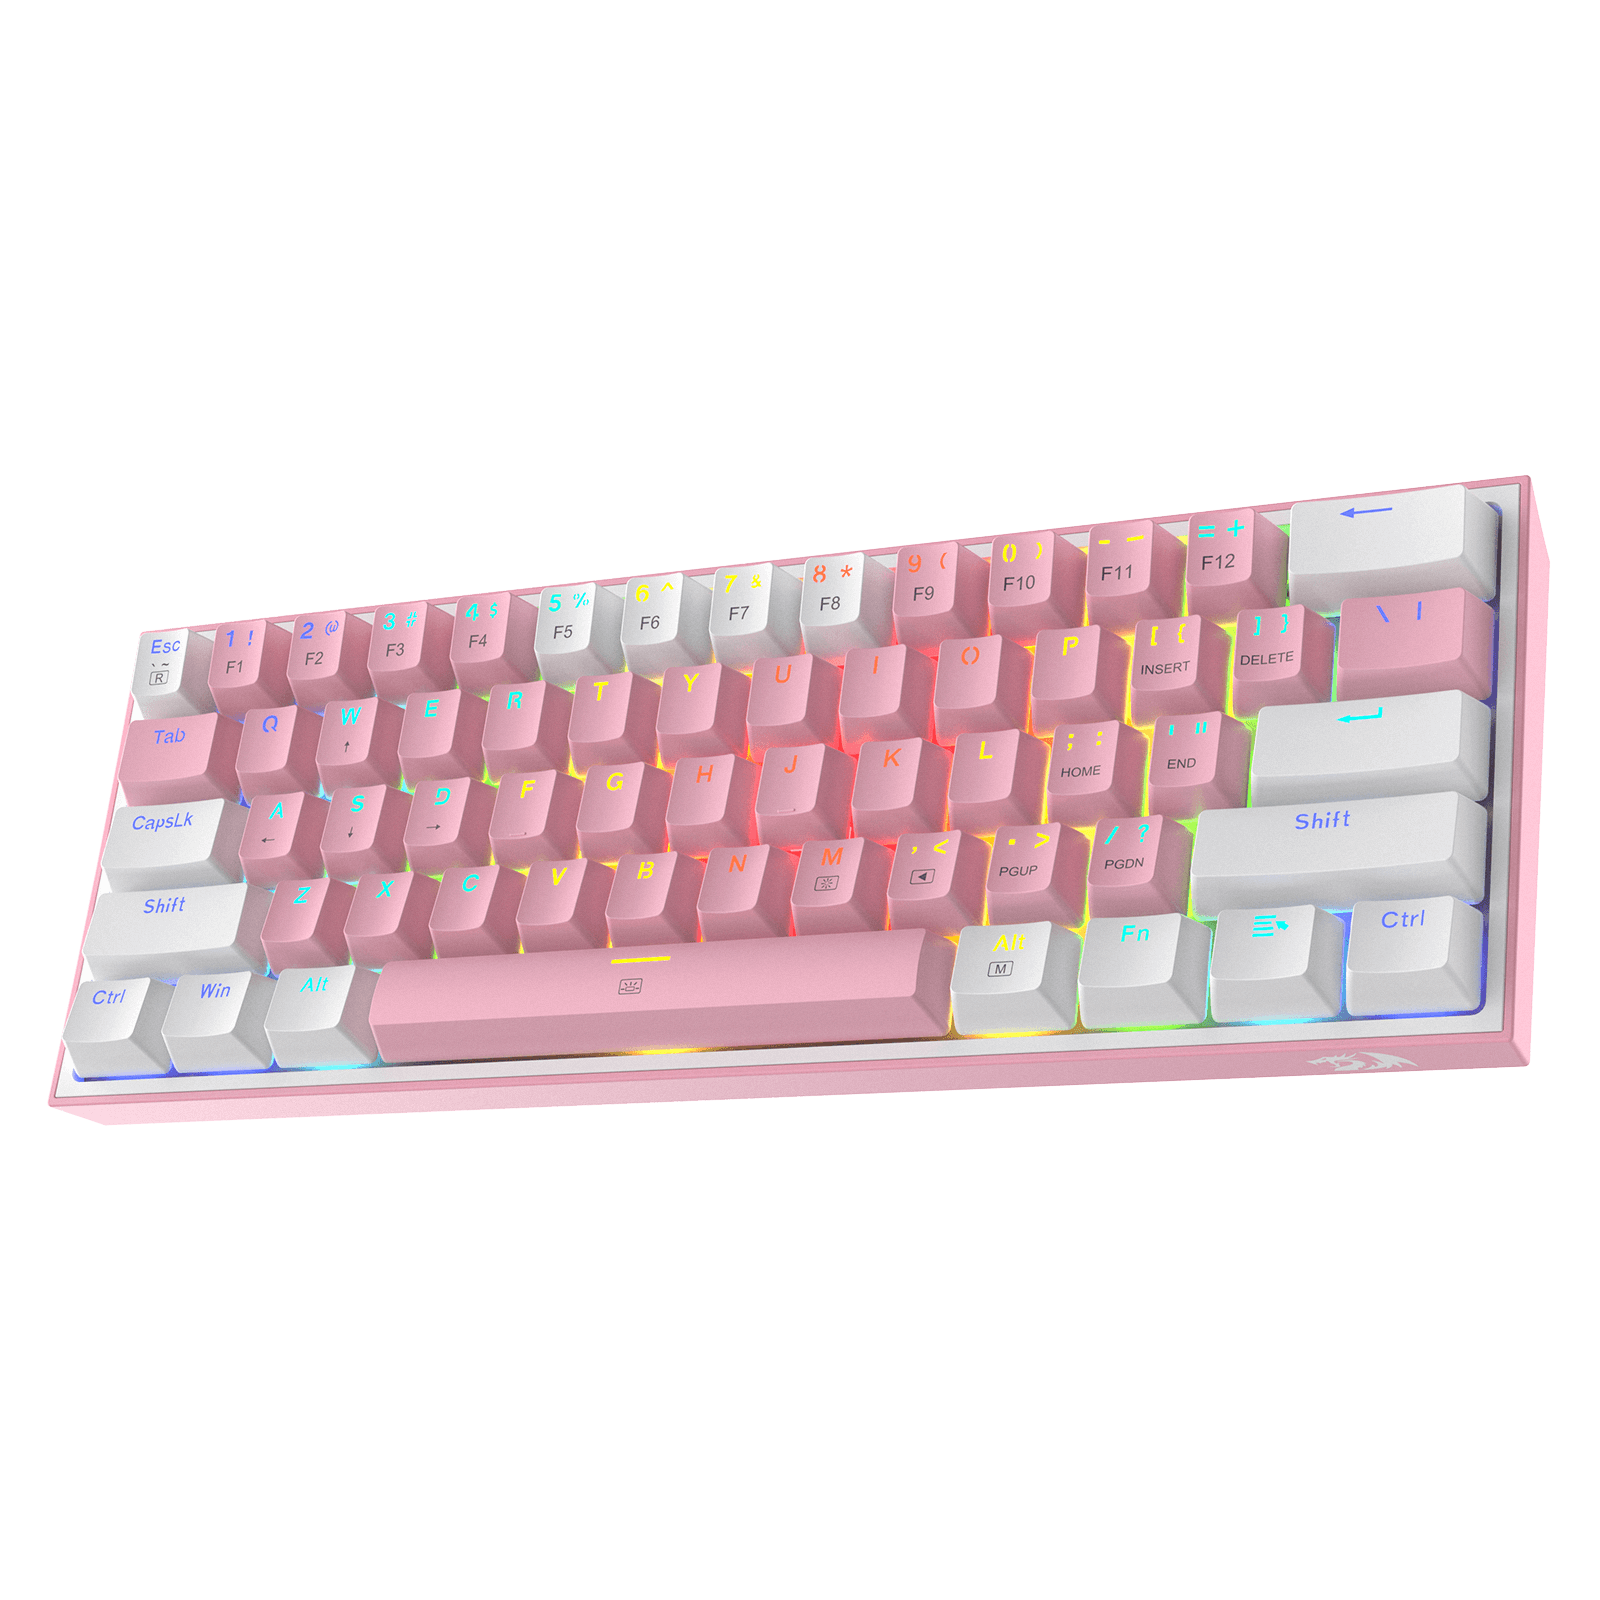 60 pink keyboard